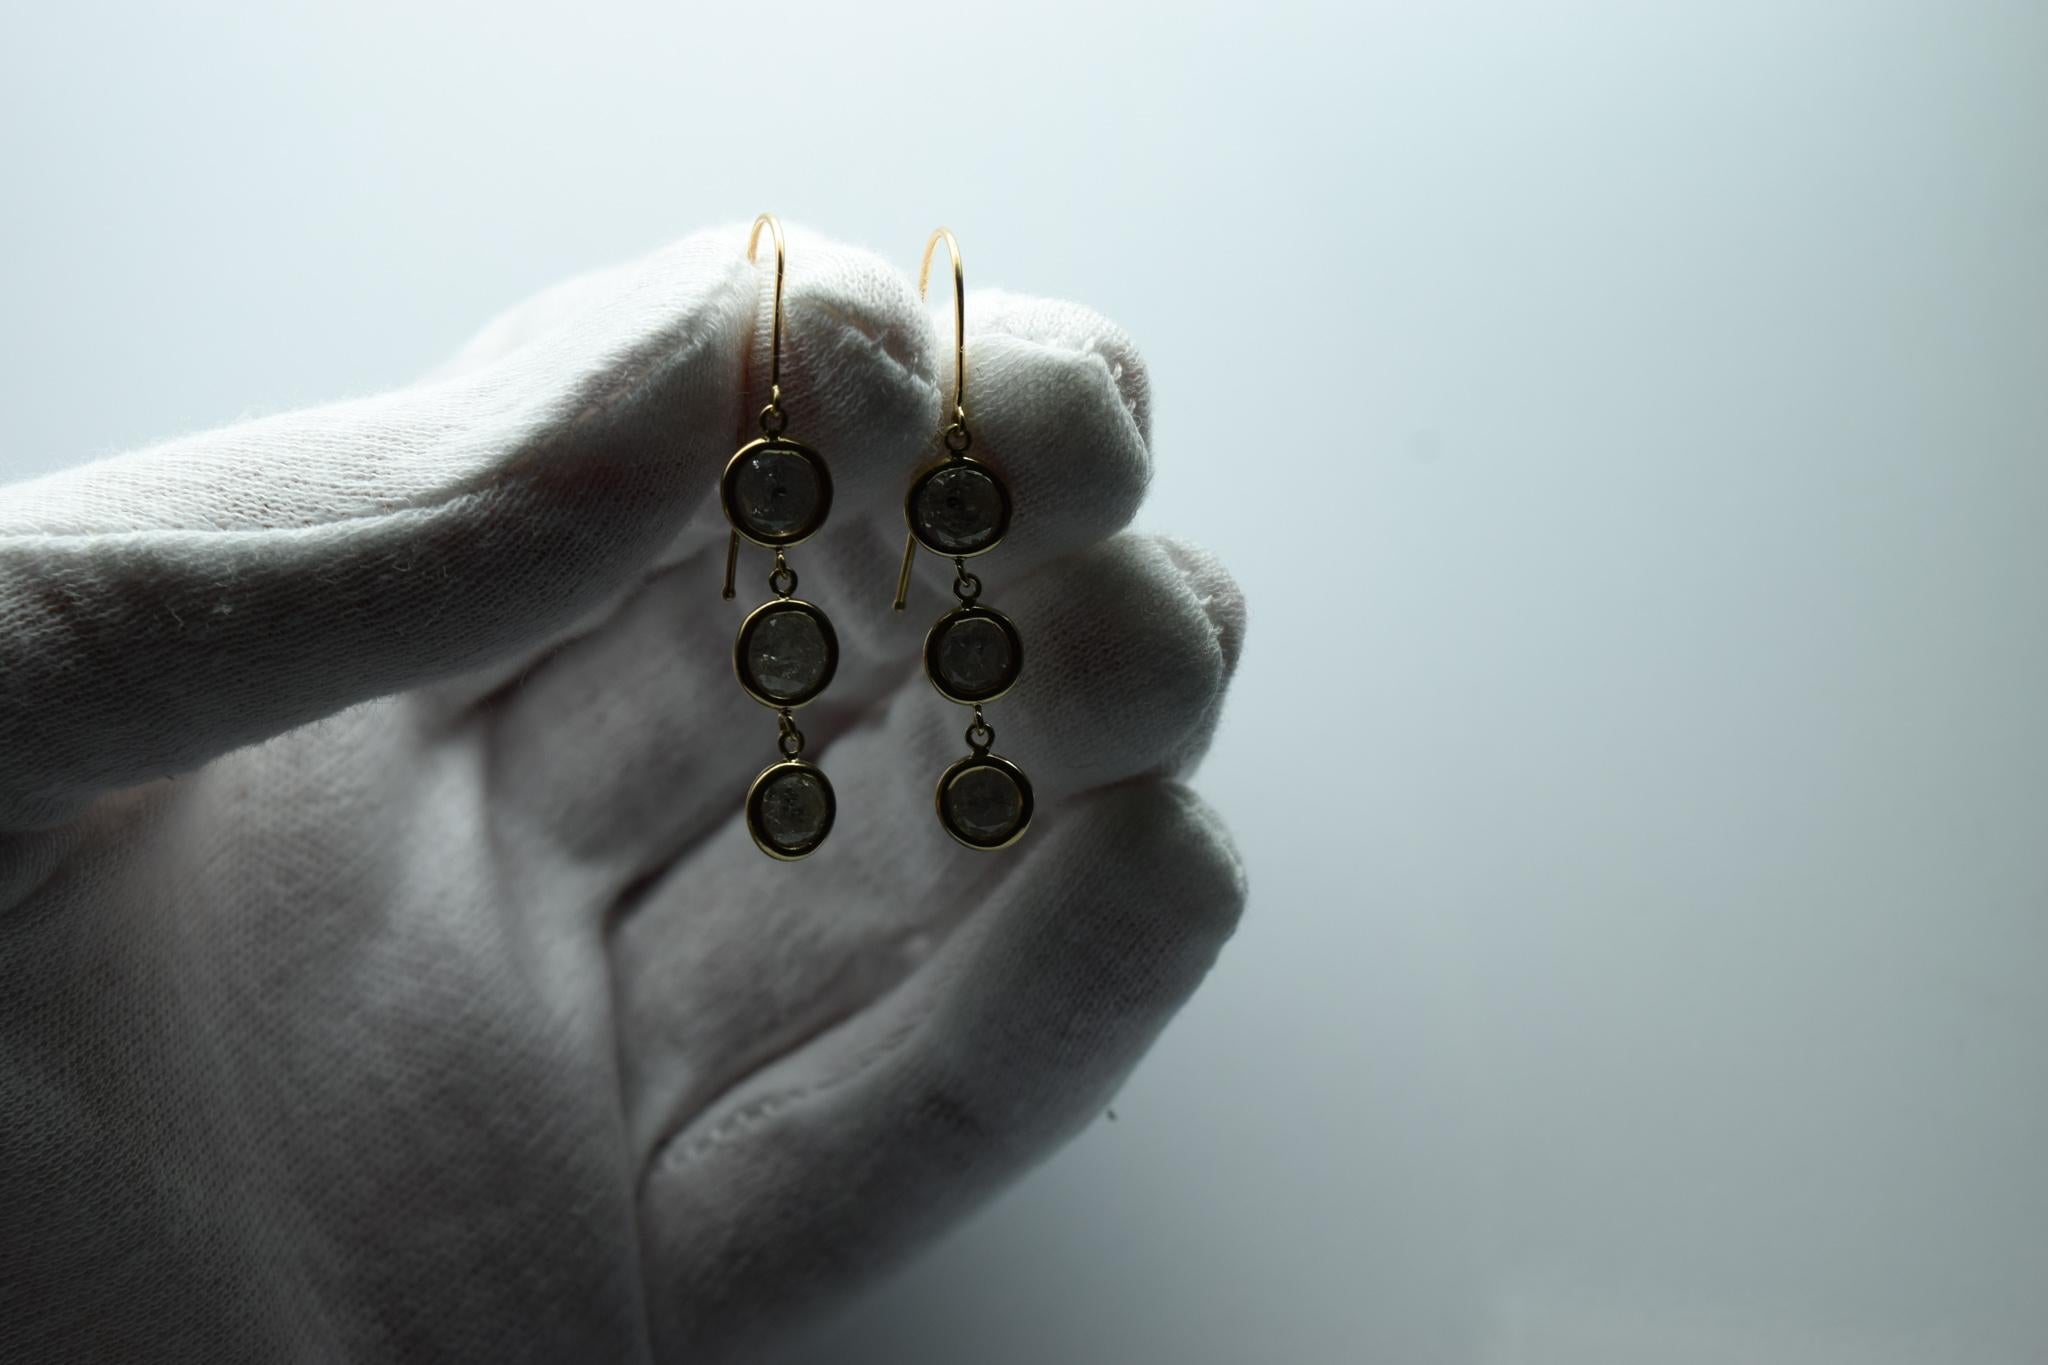 Salt and pepper diamond earrings 4ct diamond earrings dangling 14KT gold For Sale 1